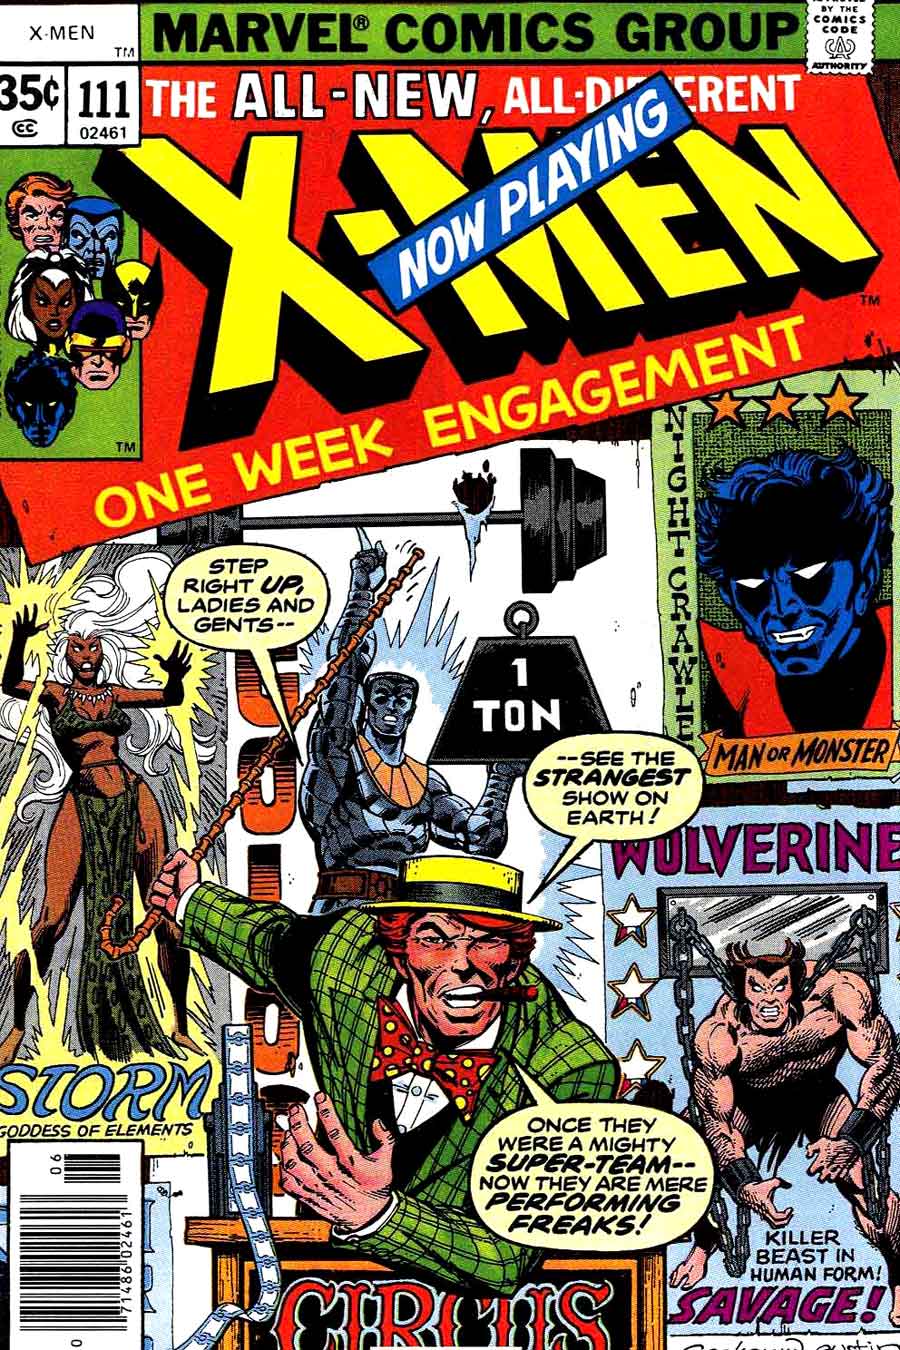 X-men v1 #111 marvel comic book cover art by John Byrne